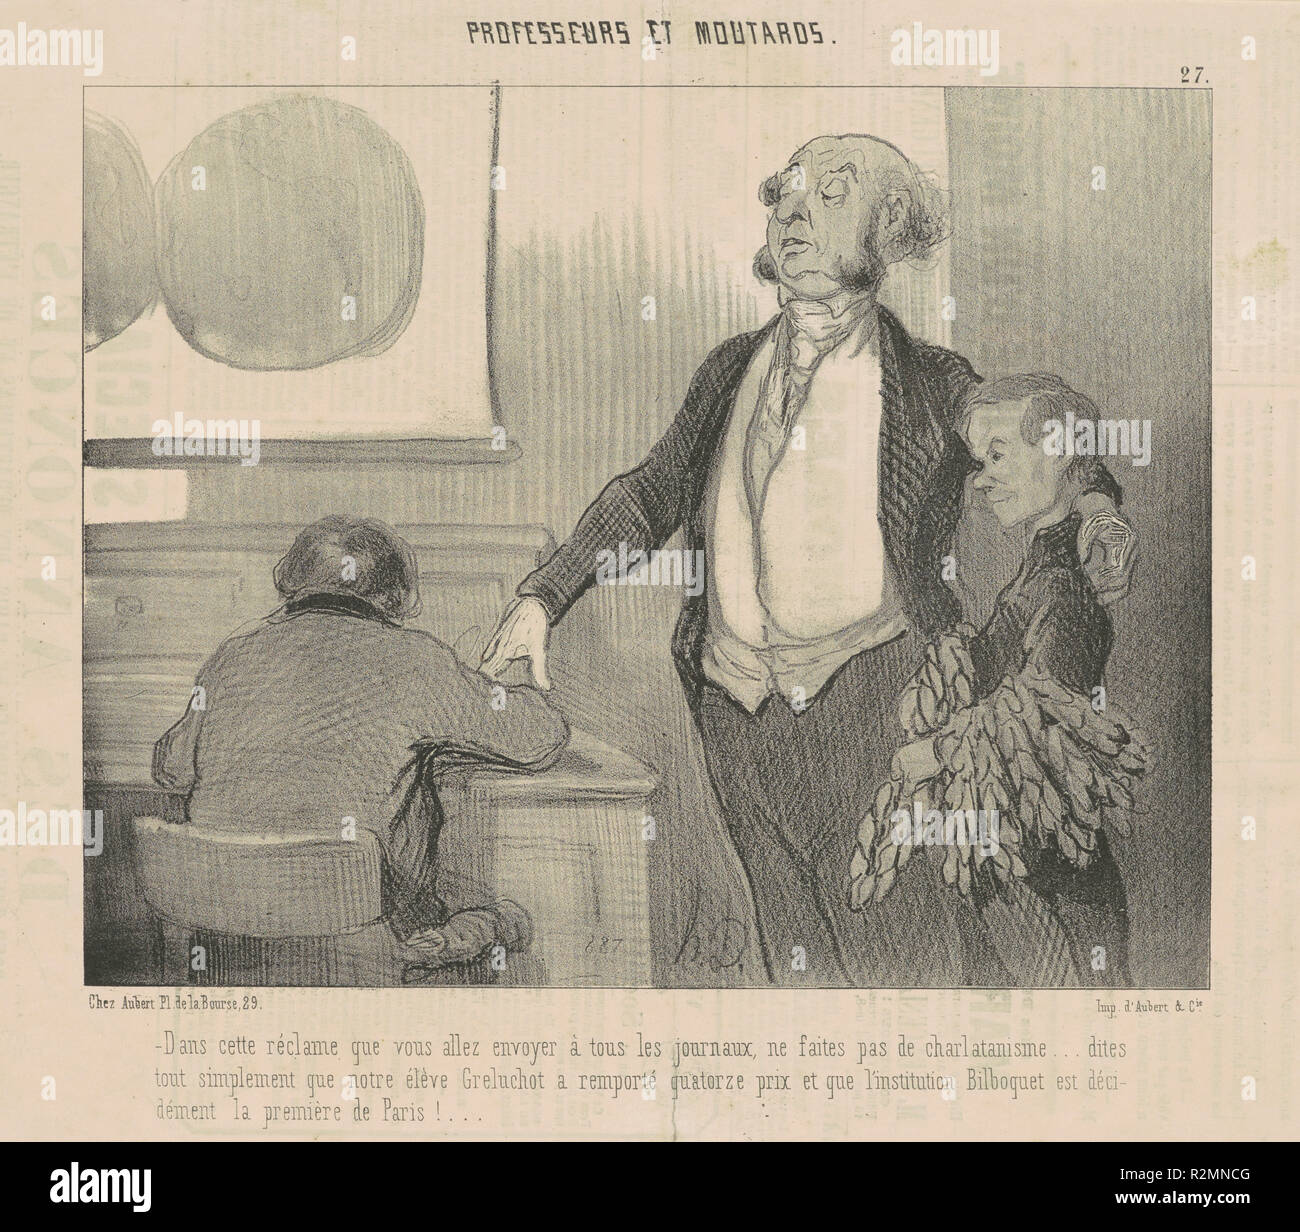 Dans cette réclame que vous allez envoyer ... Datazione: XIX secolo. Medium: litografia. Museo: National Gallery of Art di Washington DC. Autore: Honoré Daumier. Foto Stock